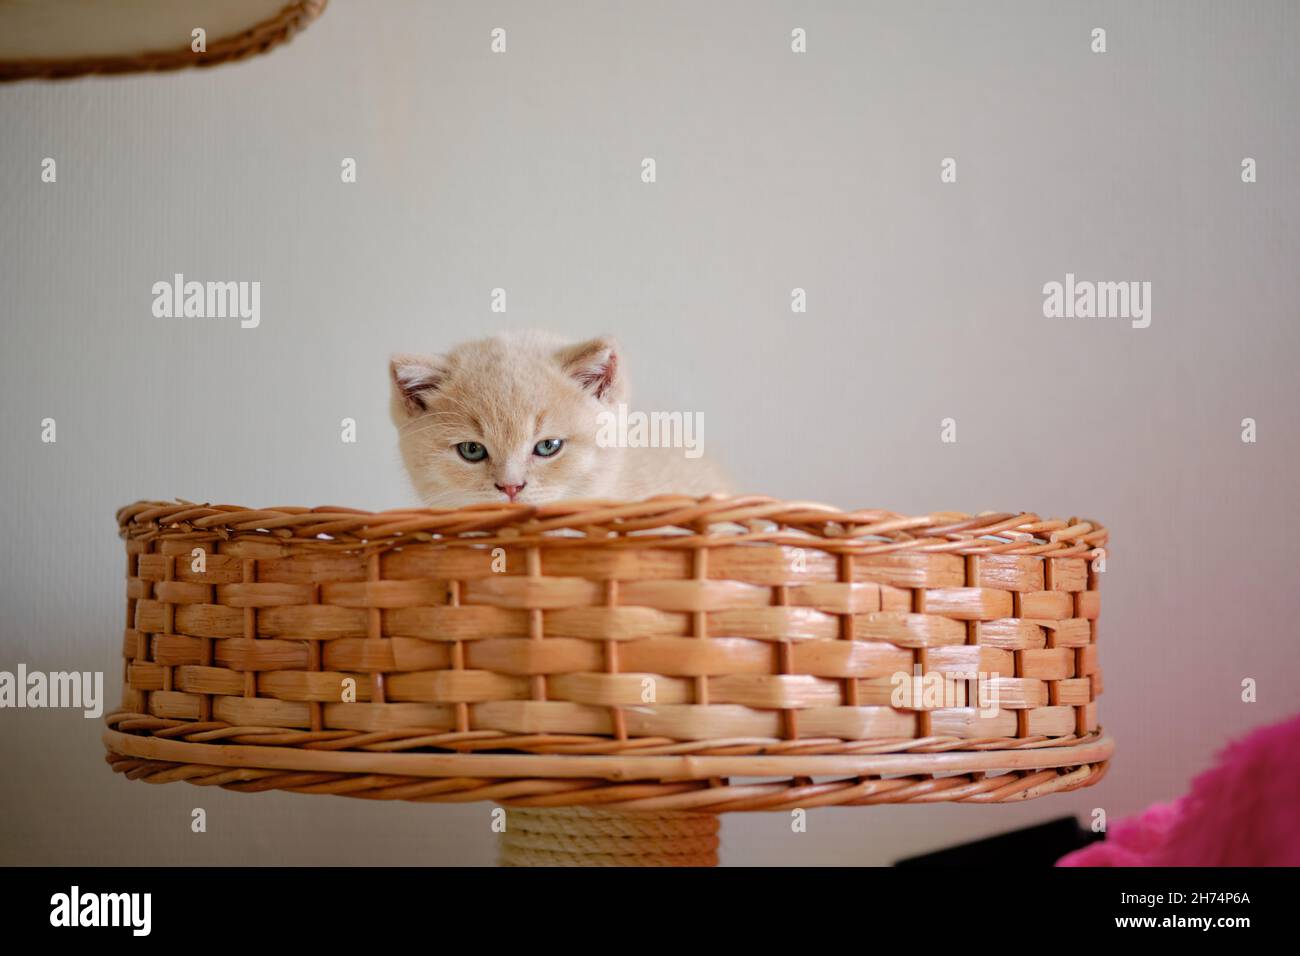 Ein hübsches kleines Kätzchen sitzt in einem Weidenkorb und schaut auf die Kamera Stockfoto